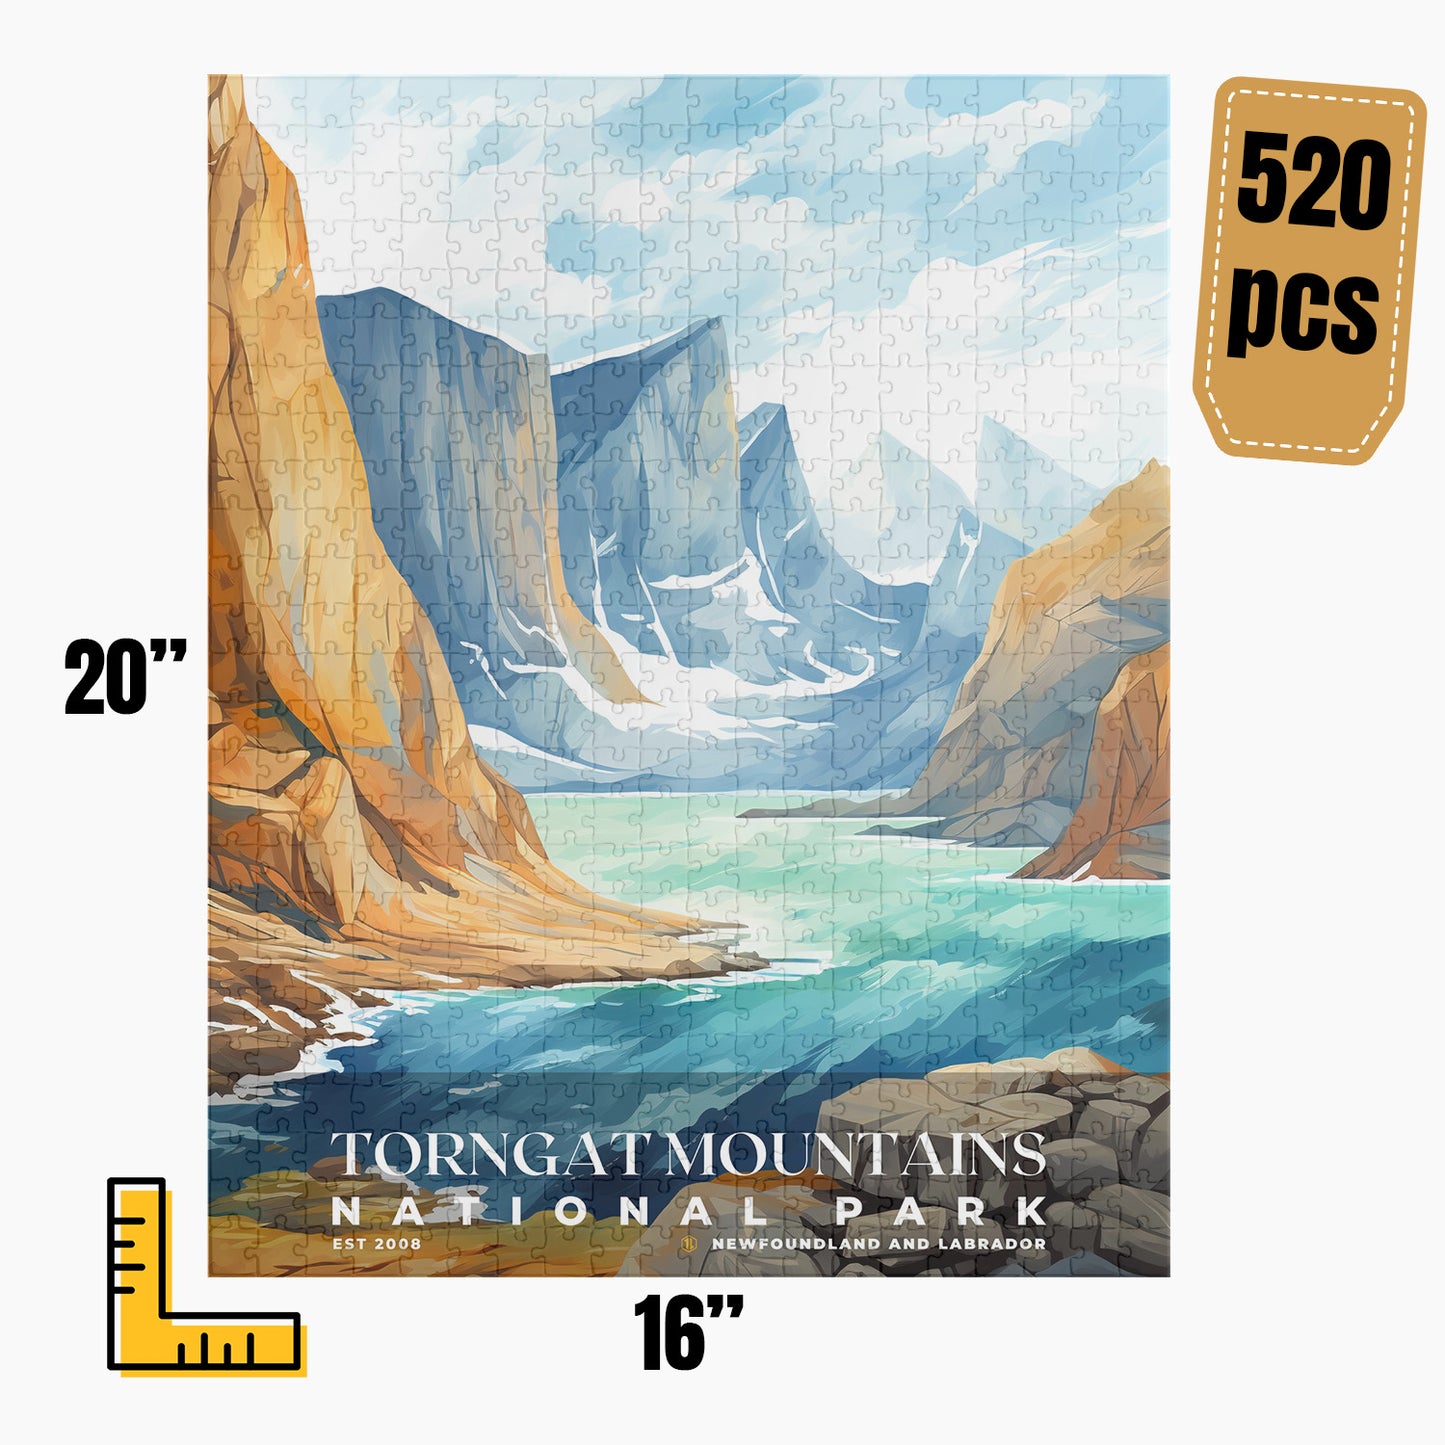 Torngat Mountains National Park Puzzle | S08